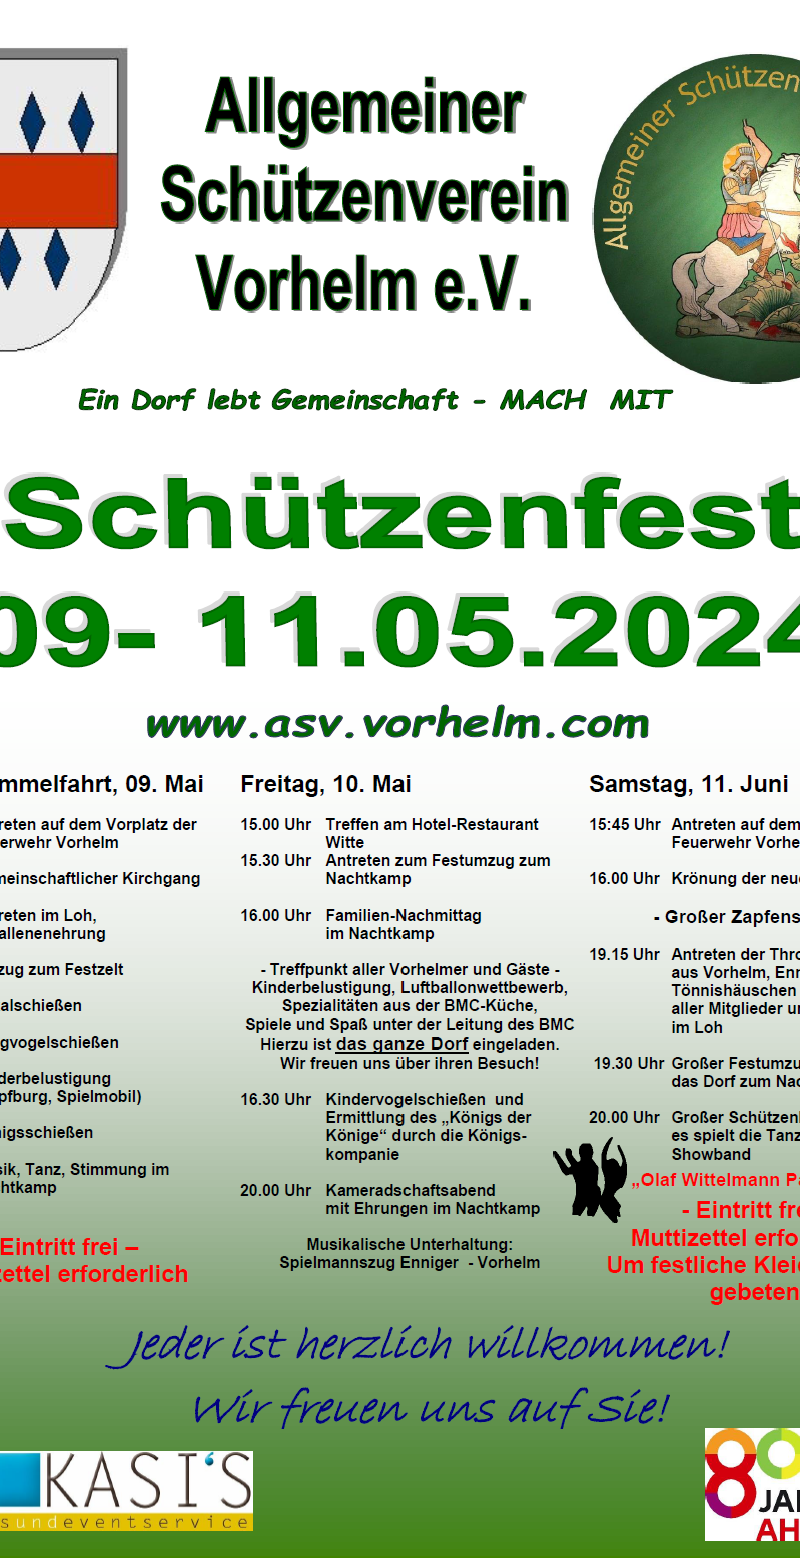 Schützenfest 09.-11. Mai 2024